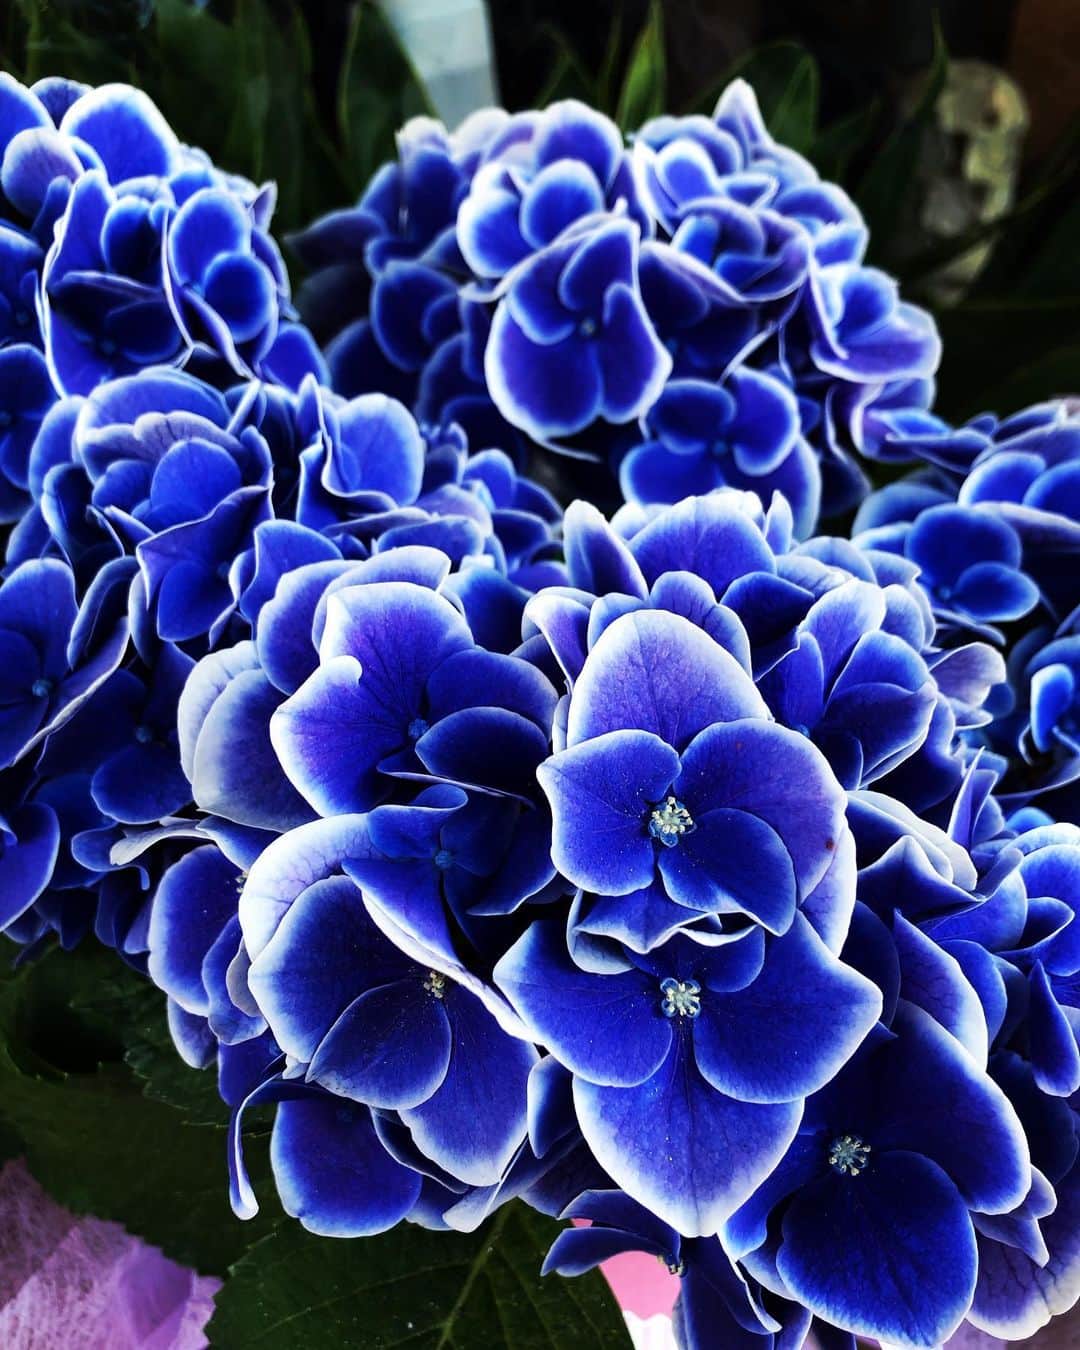 小栗左多里のインスタグラム：「いろんな紫陽花。 最後の2枚はすごくやる気ある感じの紫陽花だったんだけど伝わるかな。あっちこっちにぐんぐん伸びてた。  #紫陽花#花#花のある暮らし#風景#6月#綺麗#かわいい#美しい#青#紫#ピンク#はなすたぐらむ#季節#梅雨#東京#国際結婚#漫画家 #flowers#flowerstagram#hydrangea#blue#purple#violet#pink#japan」